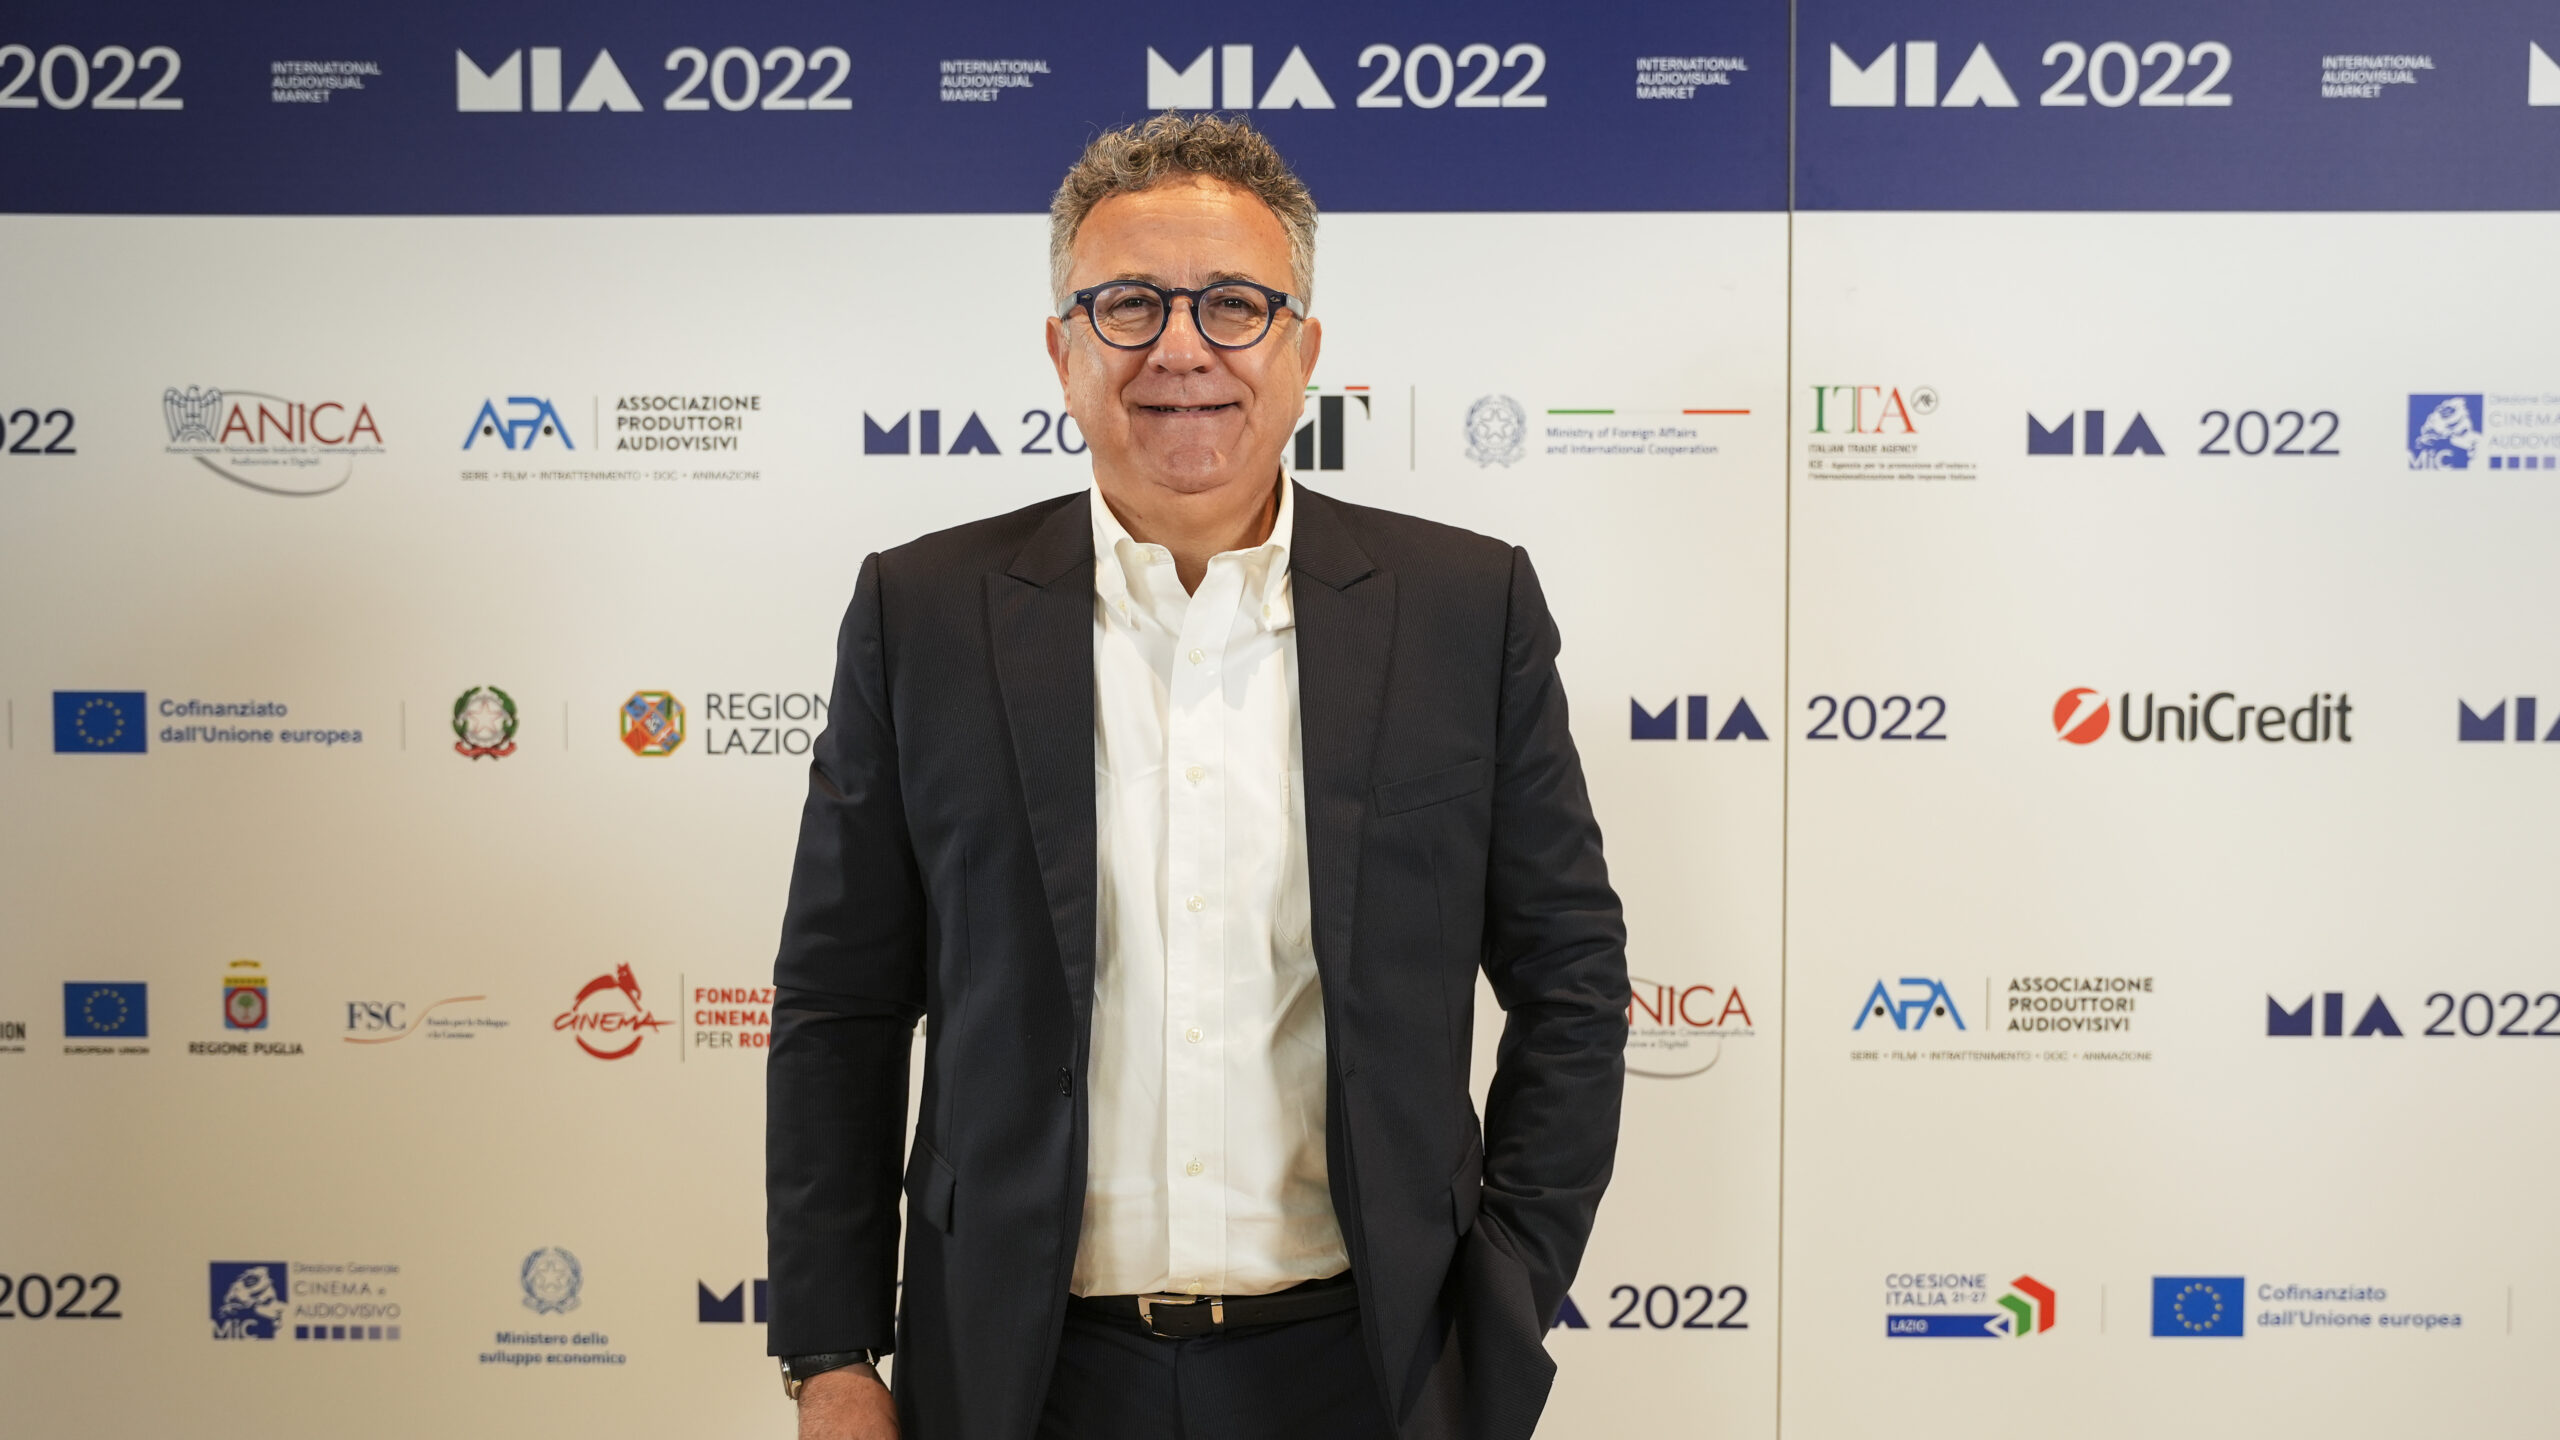 Paolo Del Brocco (CEO, Rai Cinema)